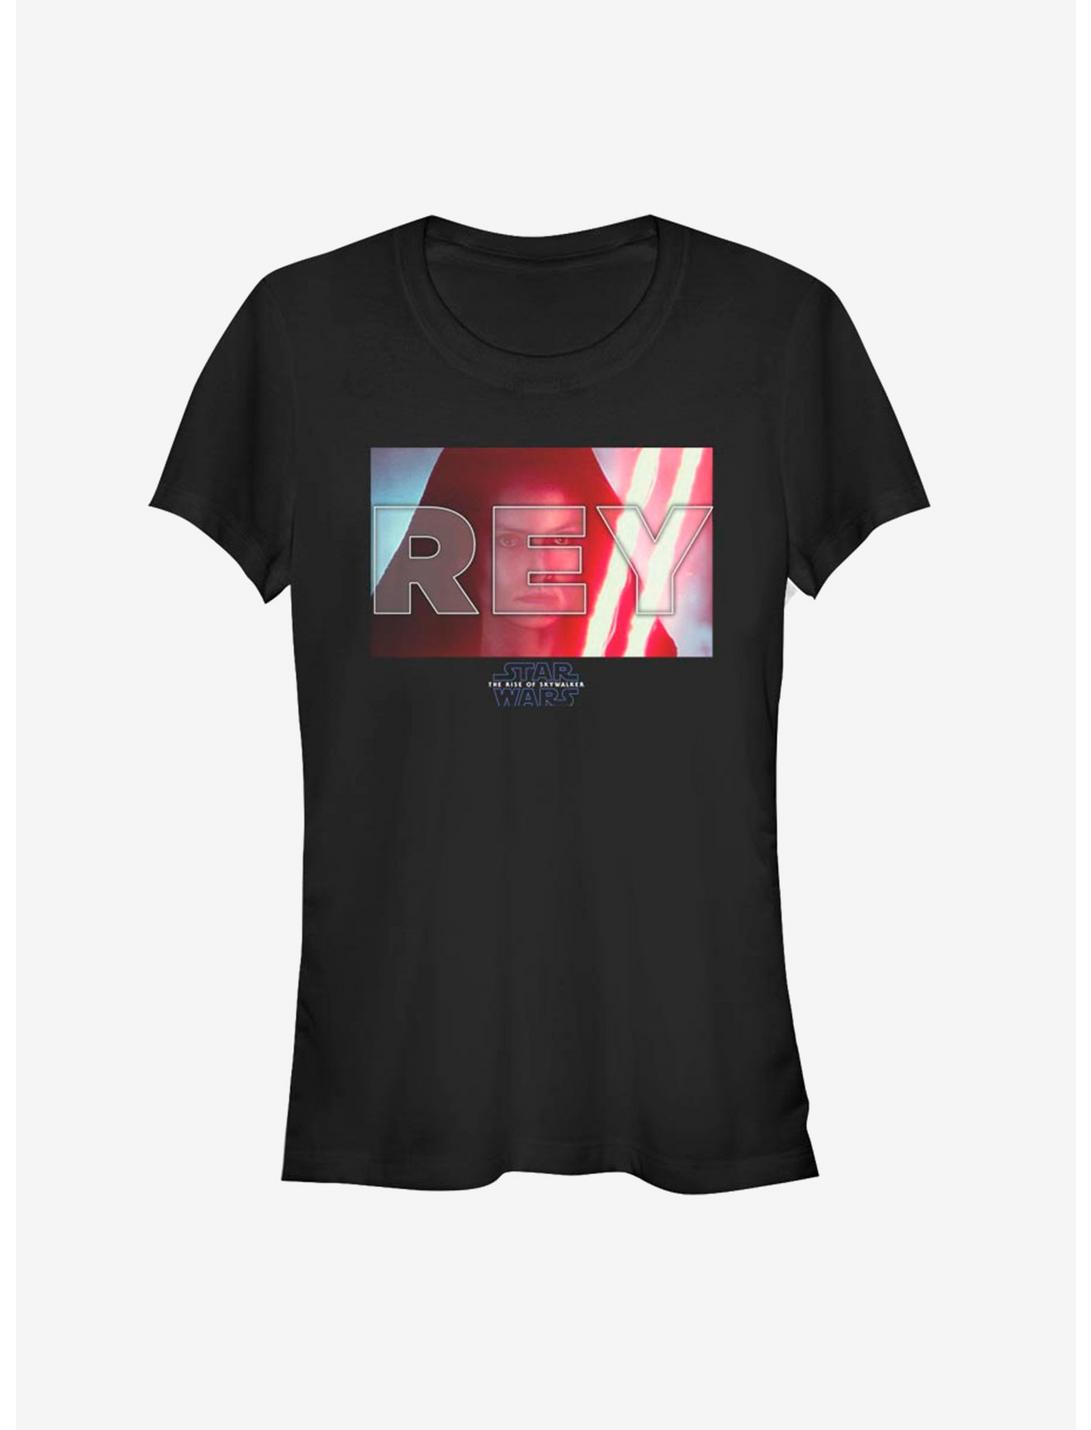 Star Wars: The Rise of Skywalker Rey Girls T-Shirt, BLACK, hi-res